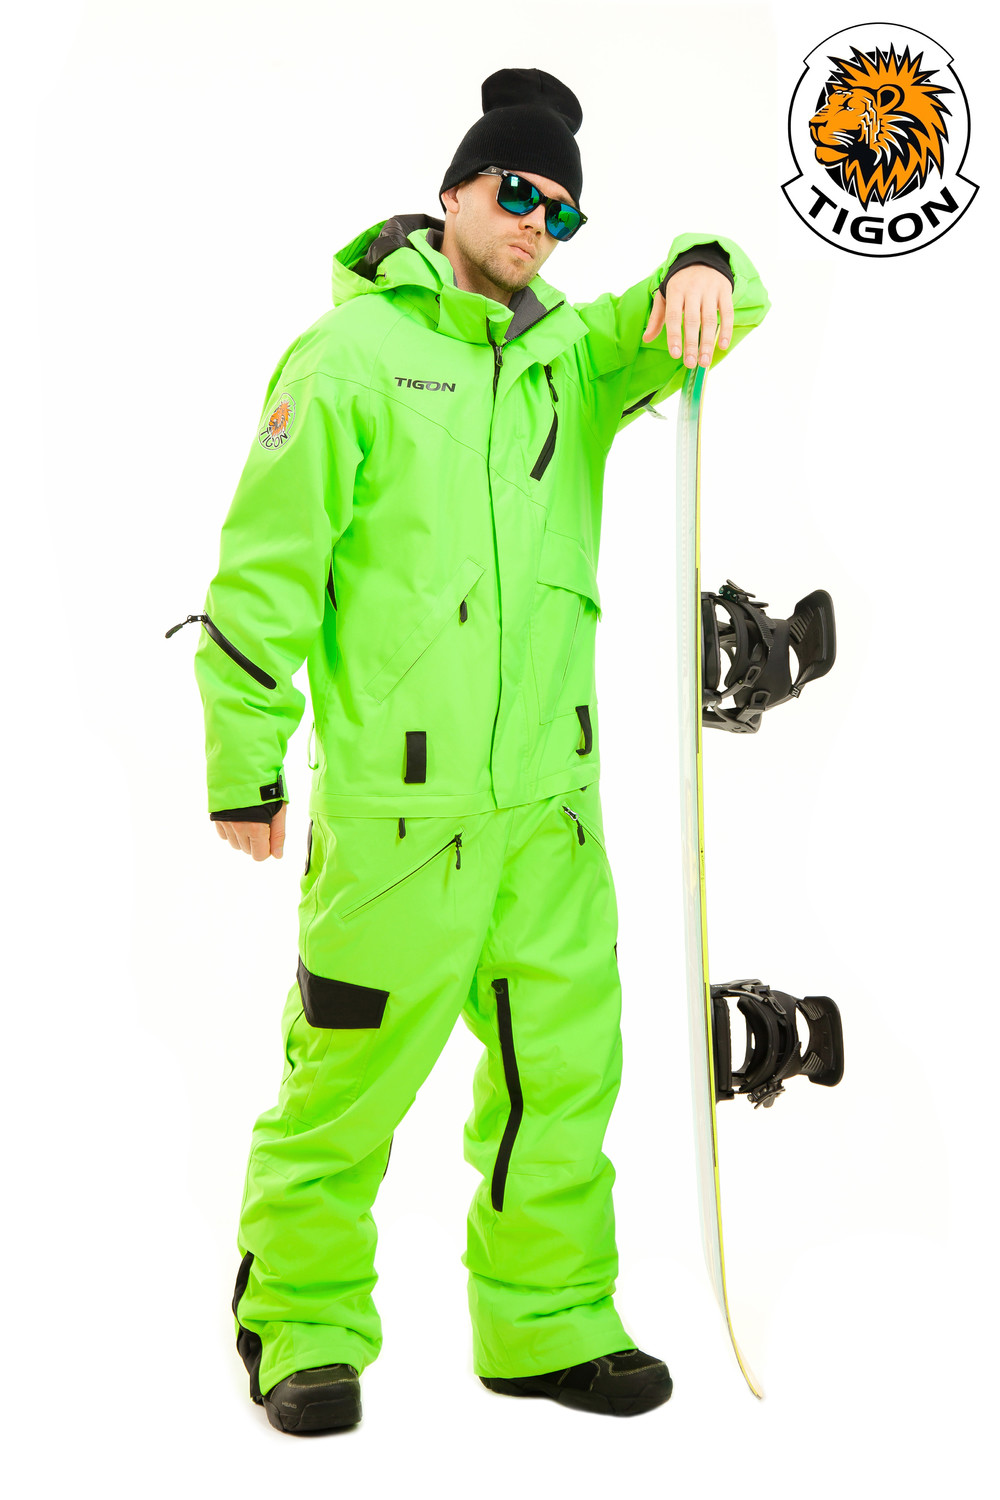 spion bijvoorbeeld Belangrijk nieuws Images Men's one piece ski suit NEON - Webshop Snow-point.com. One piece  suits (jumpsuits, onesies) for skiing and etc. - Snow-point Store